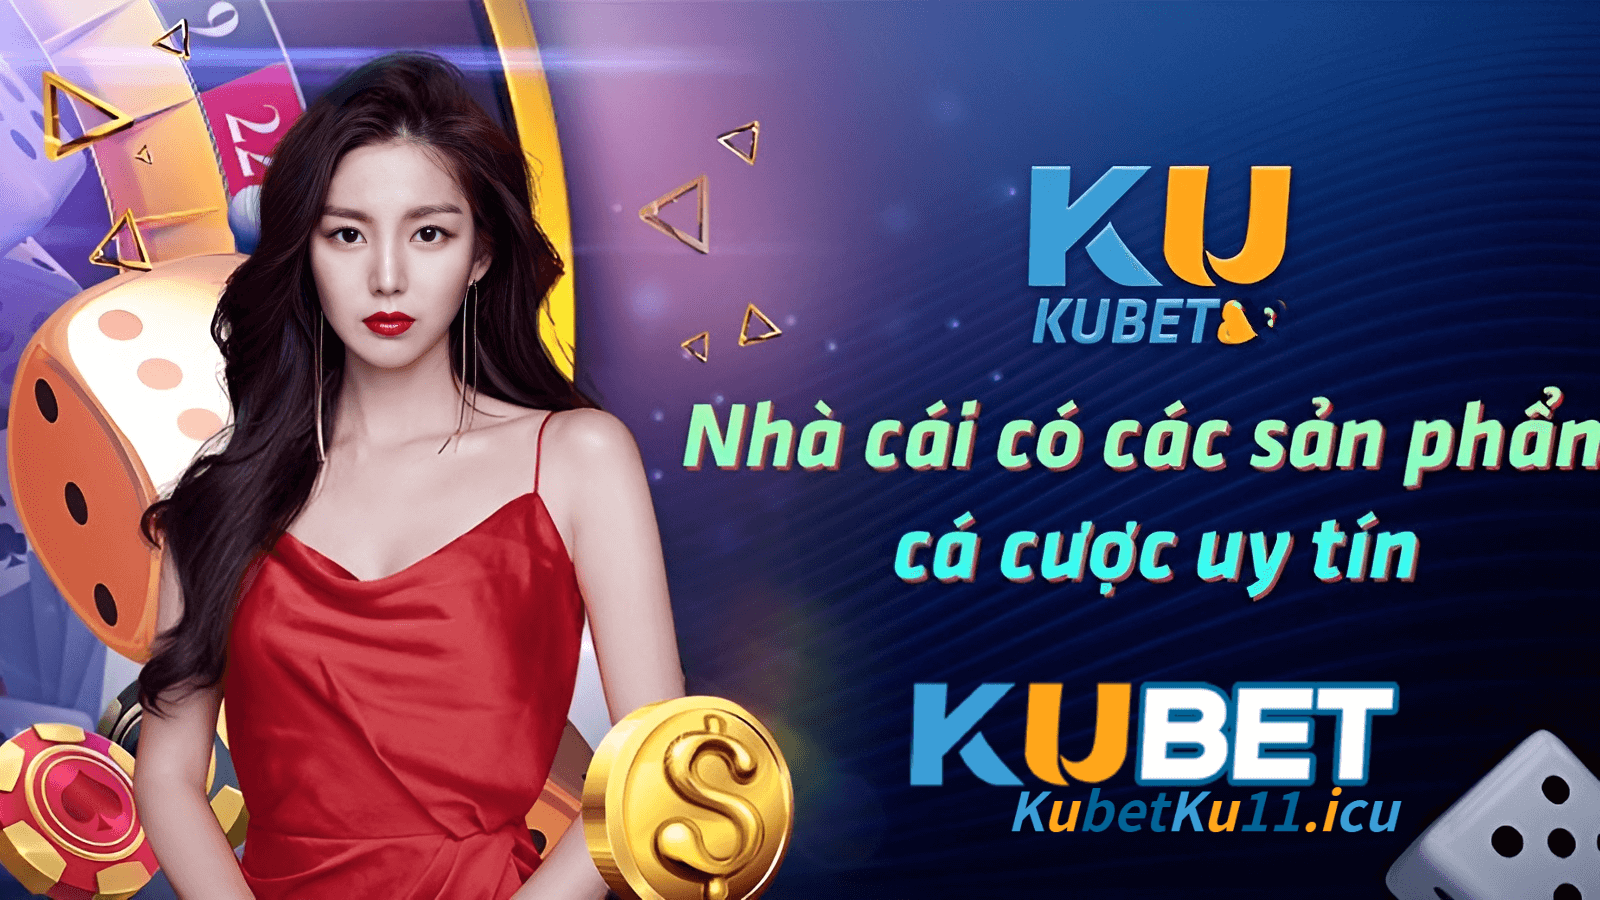 Kubet có đa dạng các sản phẩm cá cược uy tín